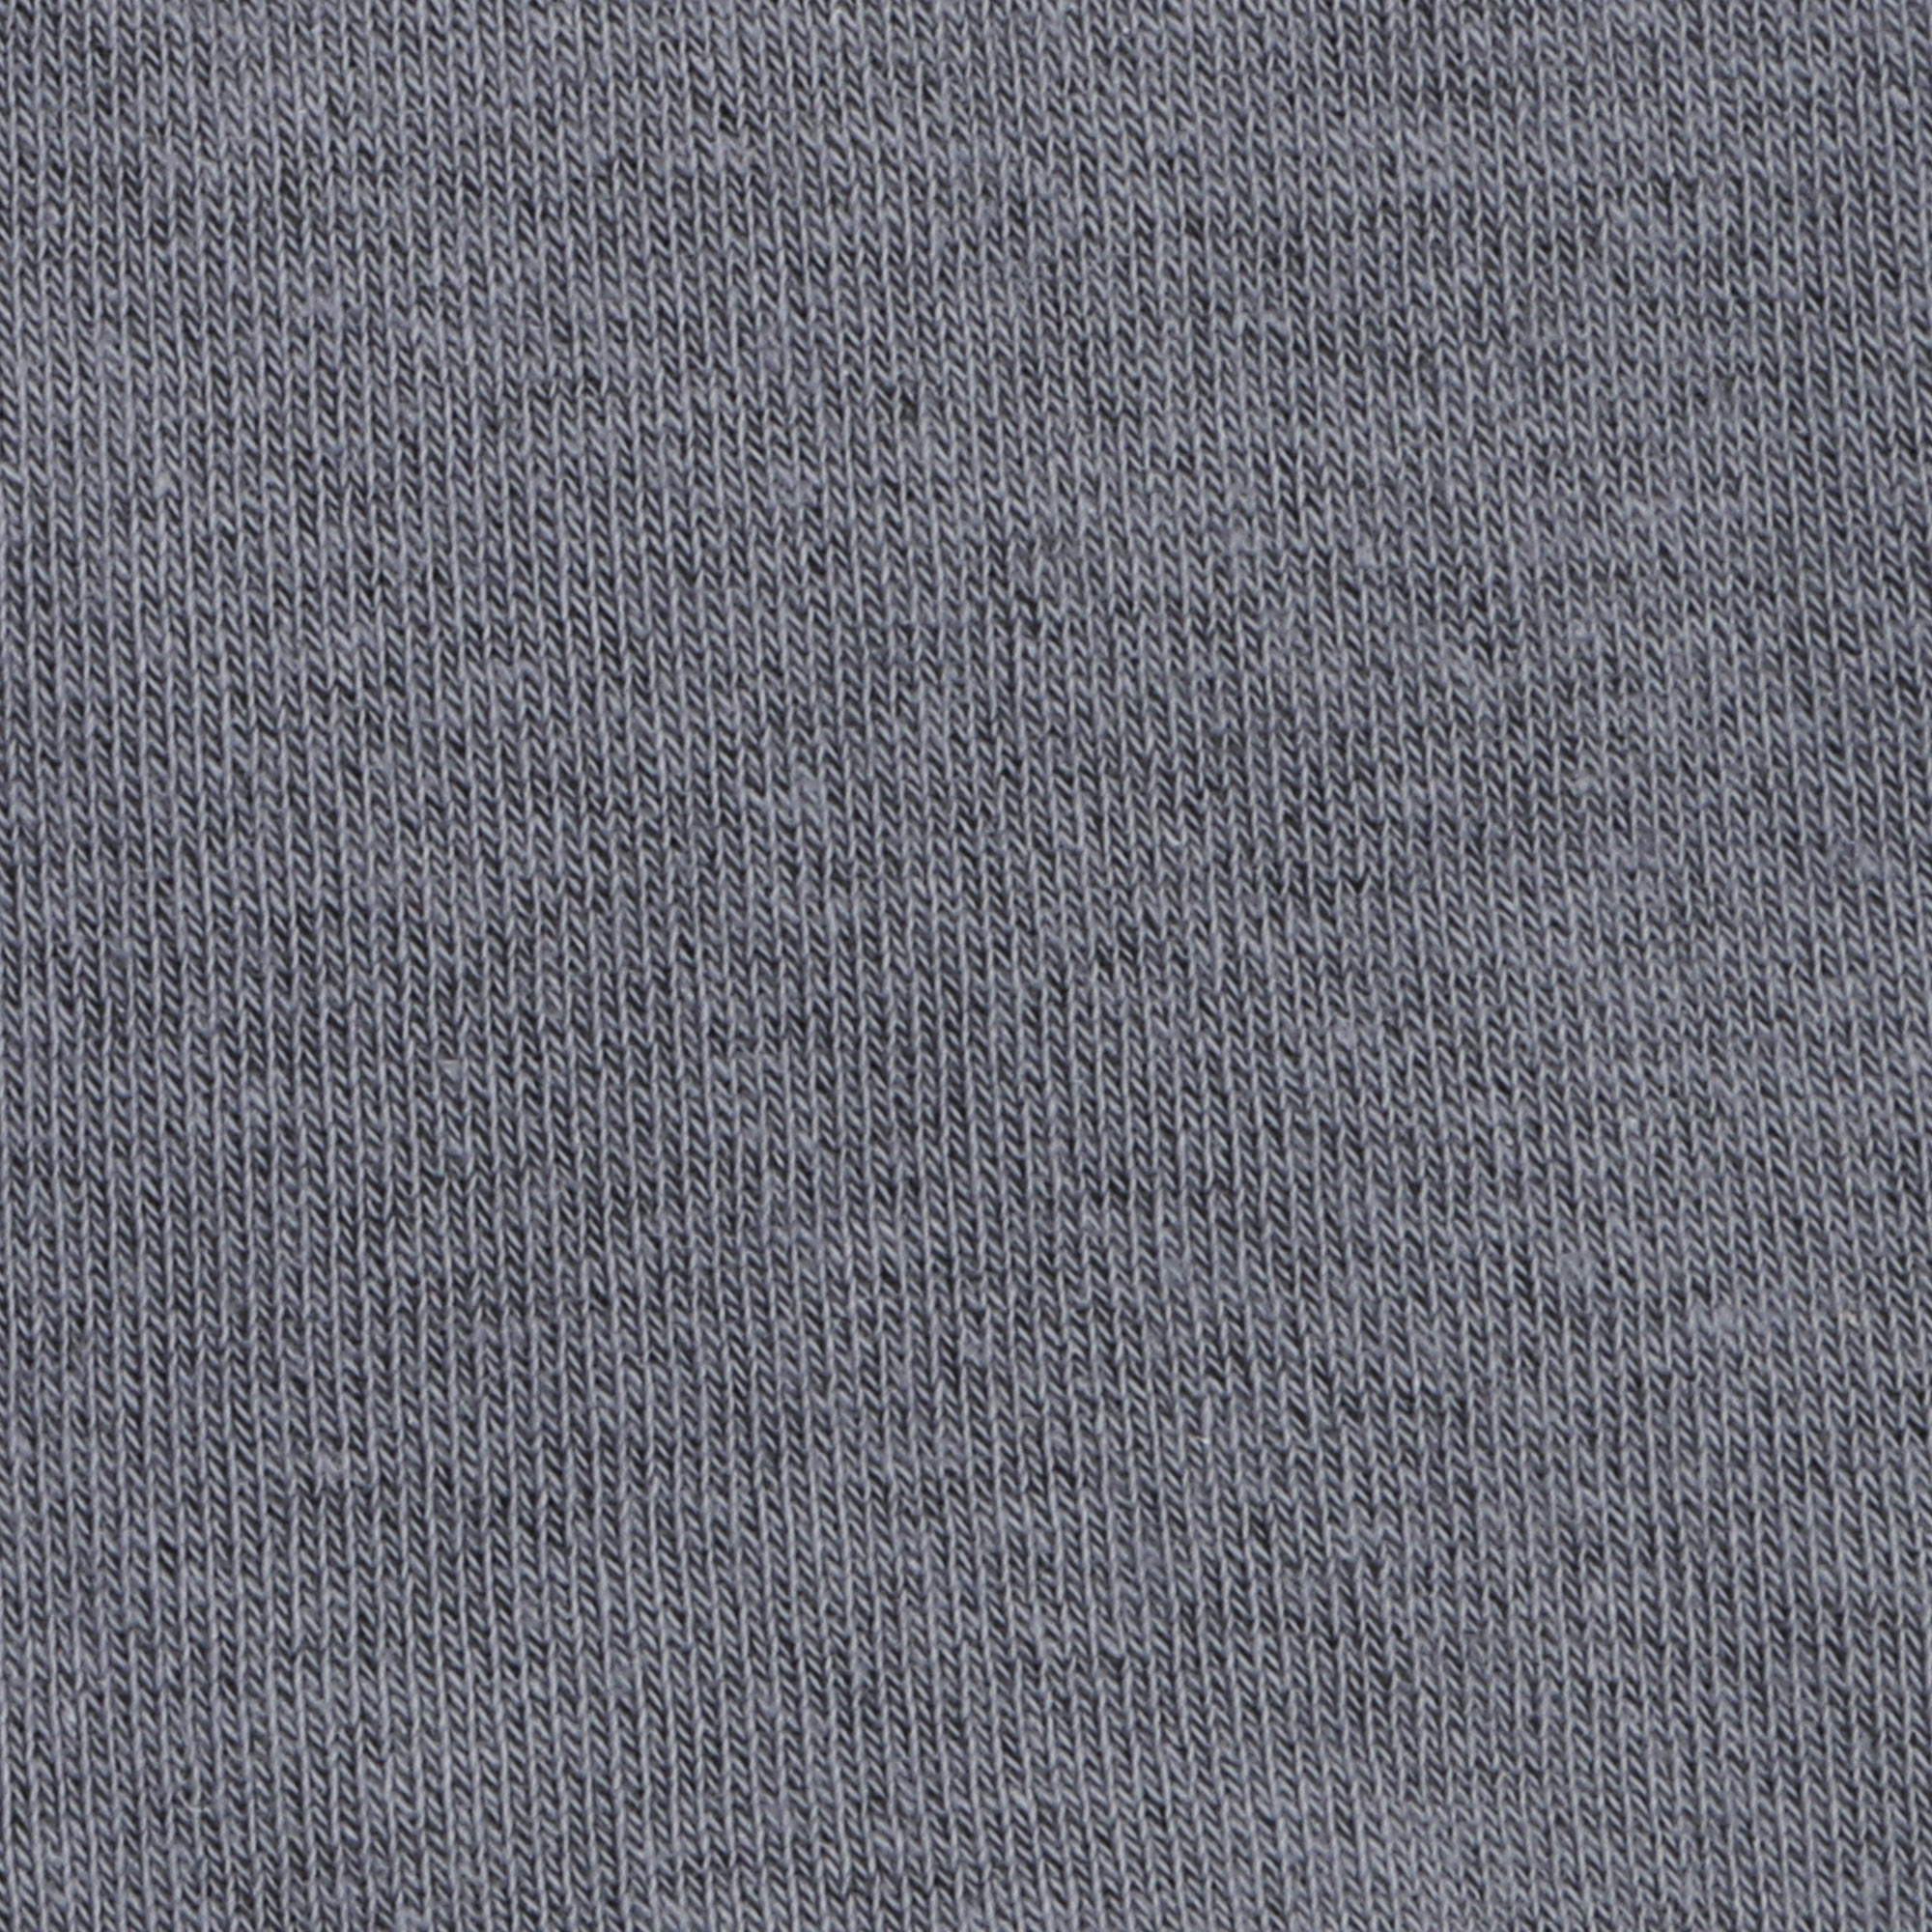 Носки мужские однотонные Lucky Socks НМГ-0053 серые  29-31, цвет серый, размер 29-31 - фото 2